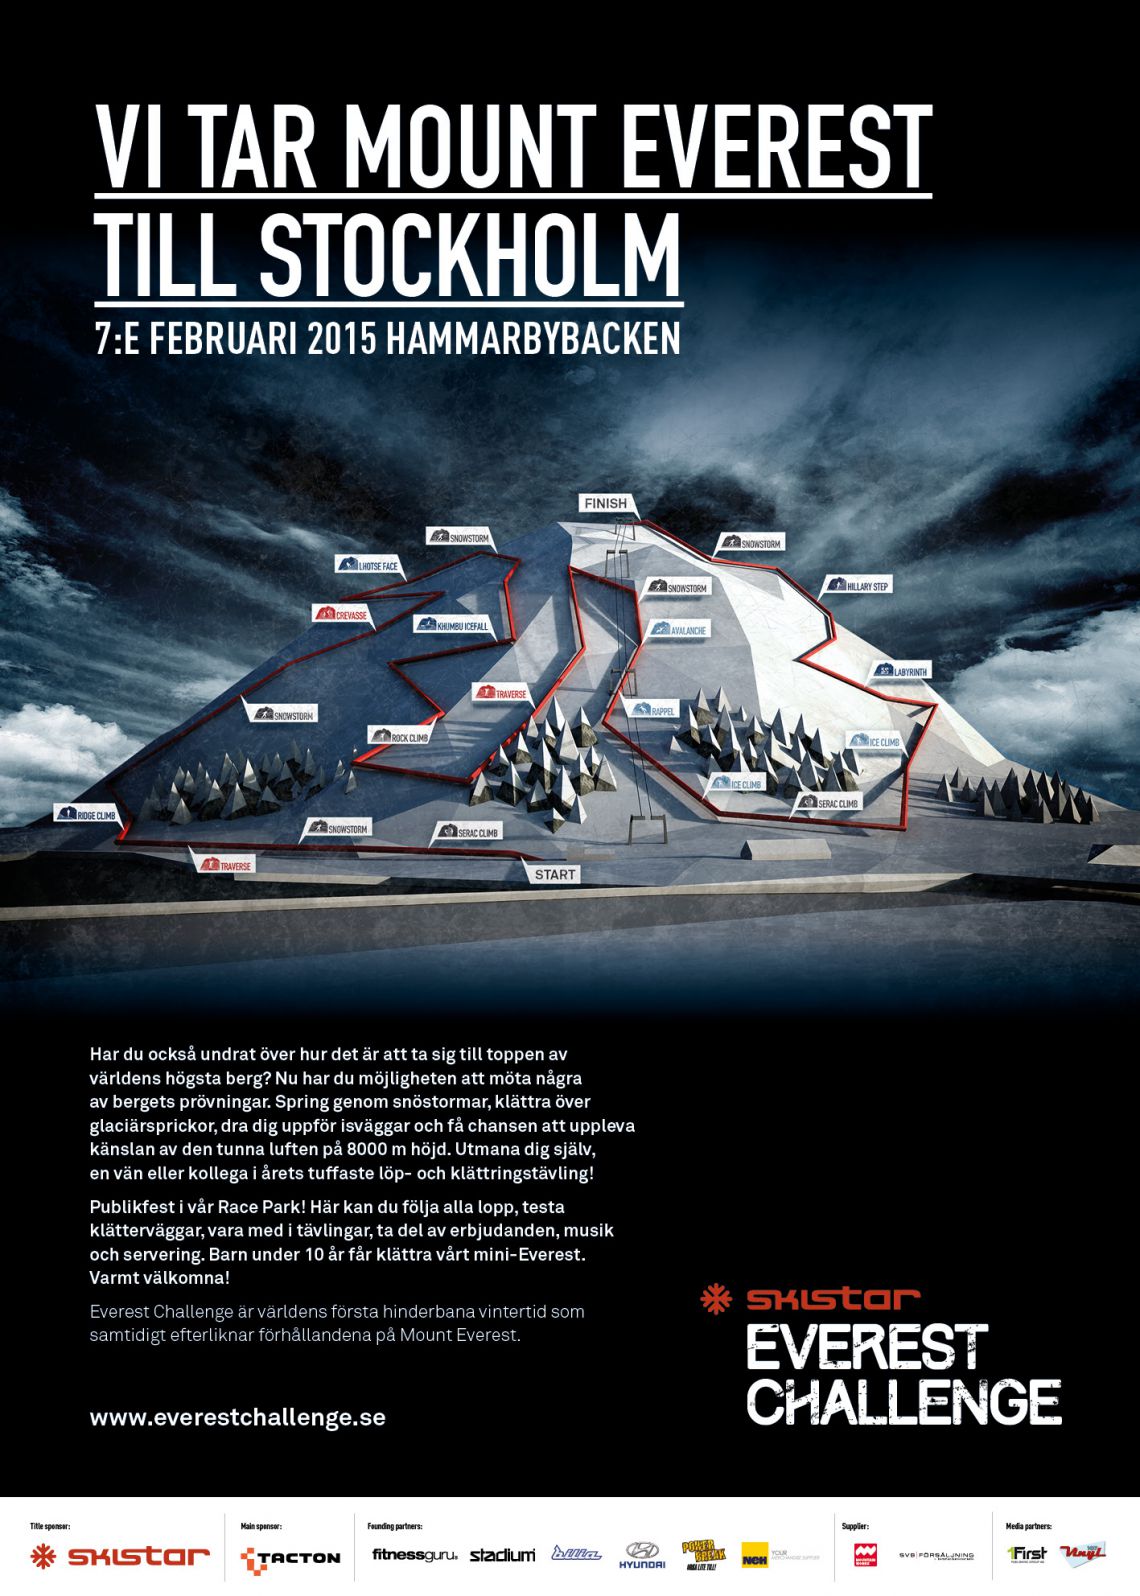 Skistar_Everest_Challenge_affisch_500x700_jan15